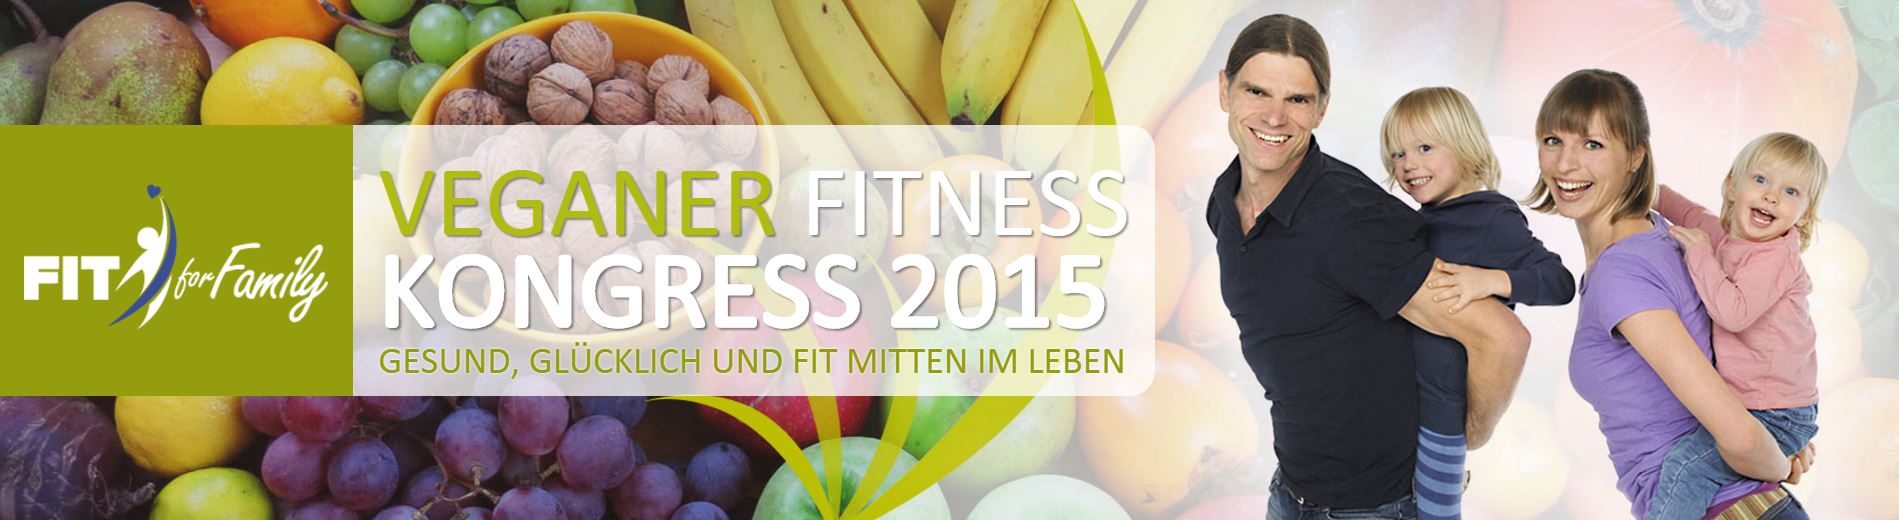 Veganer_Fitness_Kongress_2015